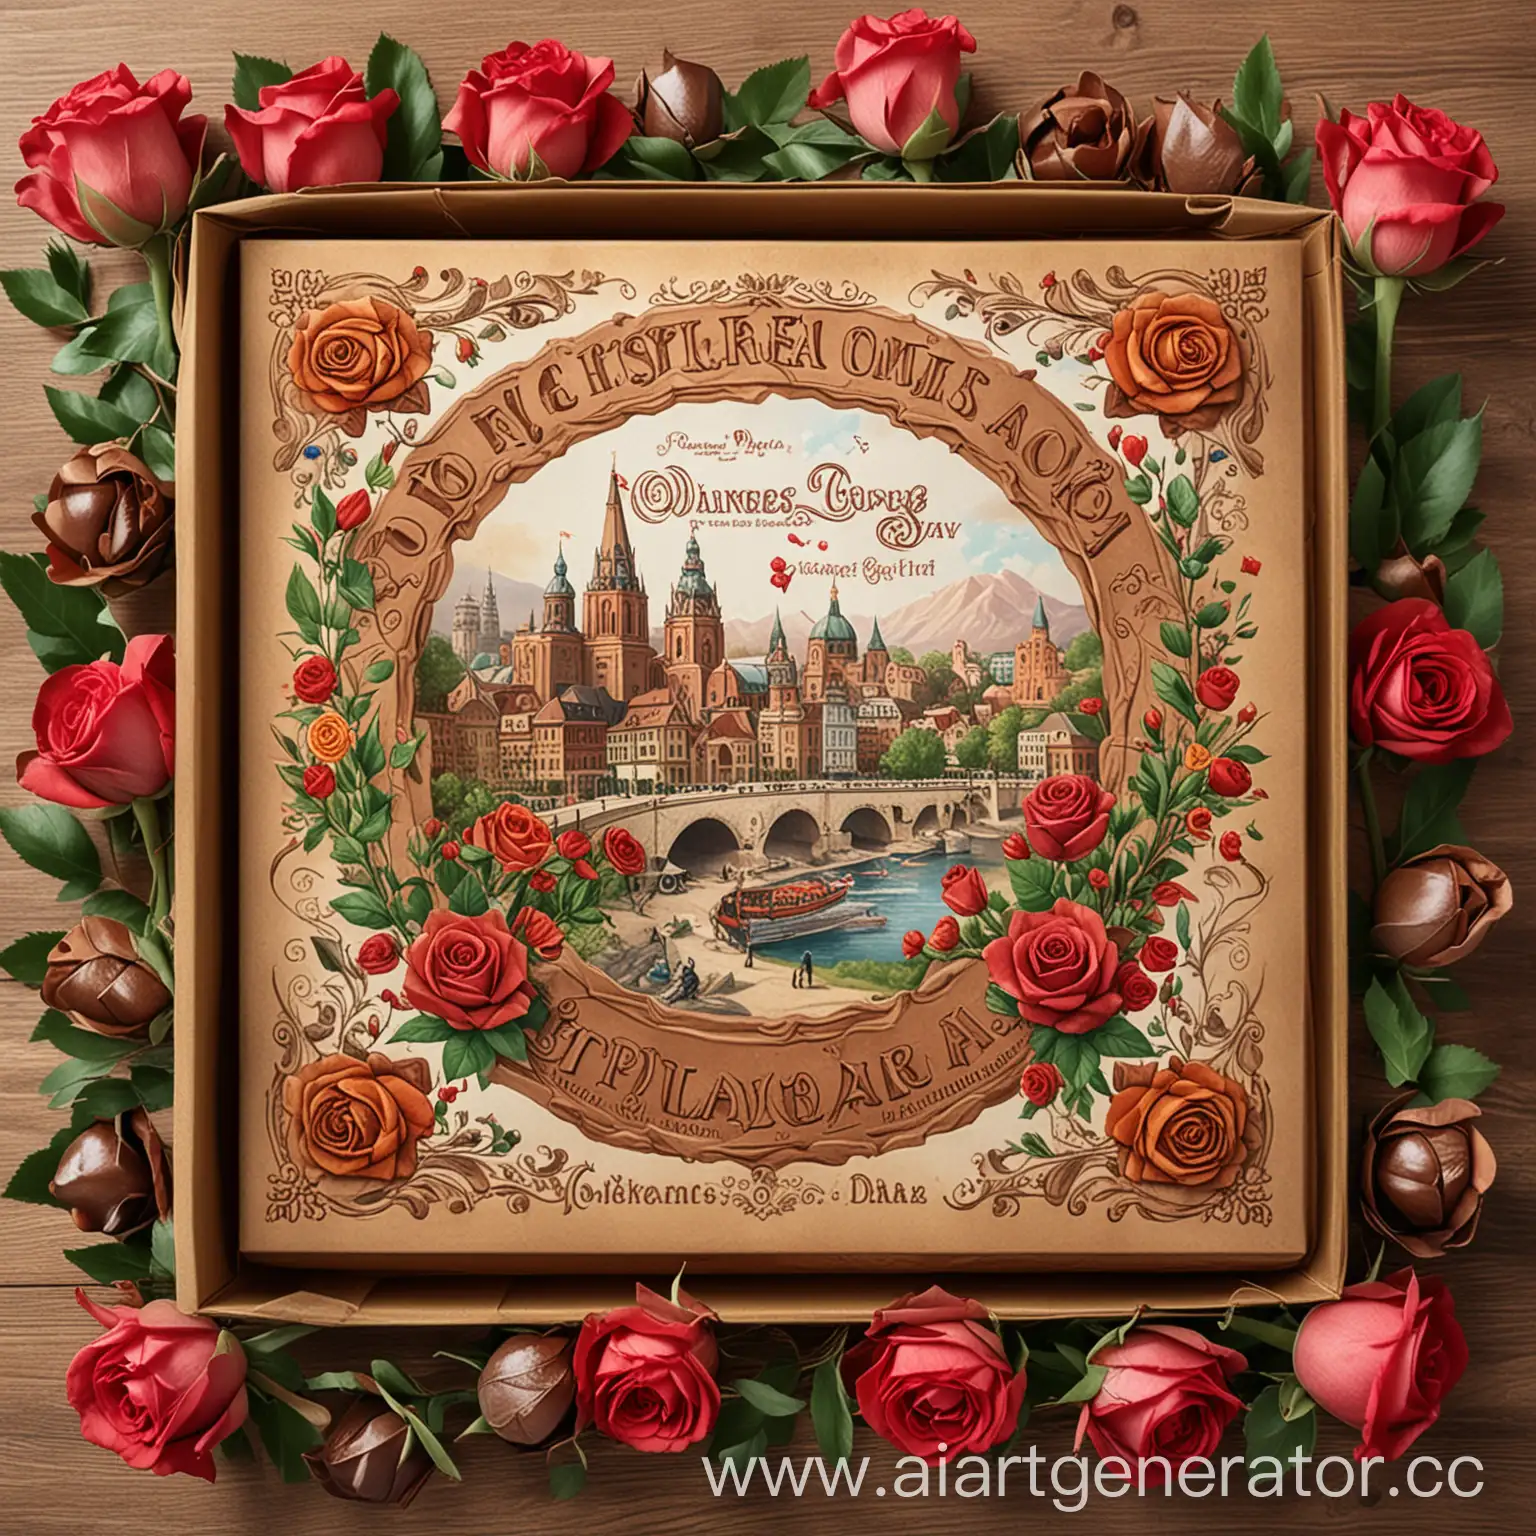 Дизайн коробки конфет , в честь праздника дня шахтера, города Донецка, необходимо в дизайне отобразить город, розы и терриконы